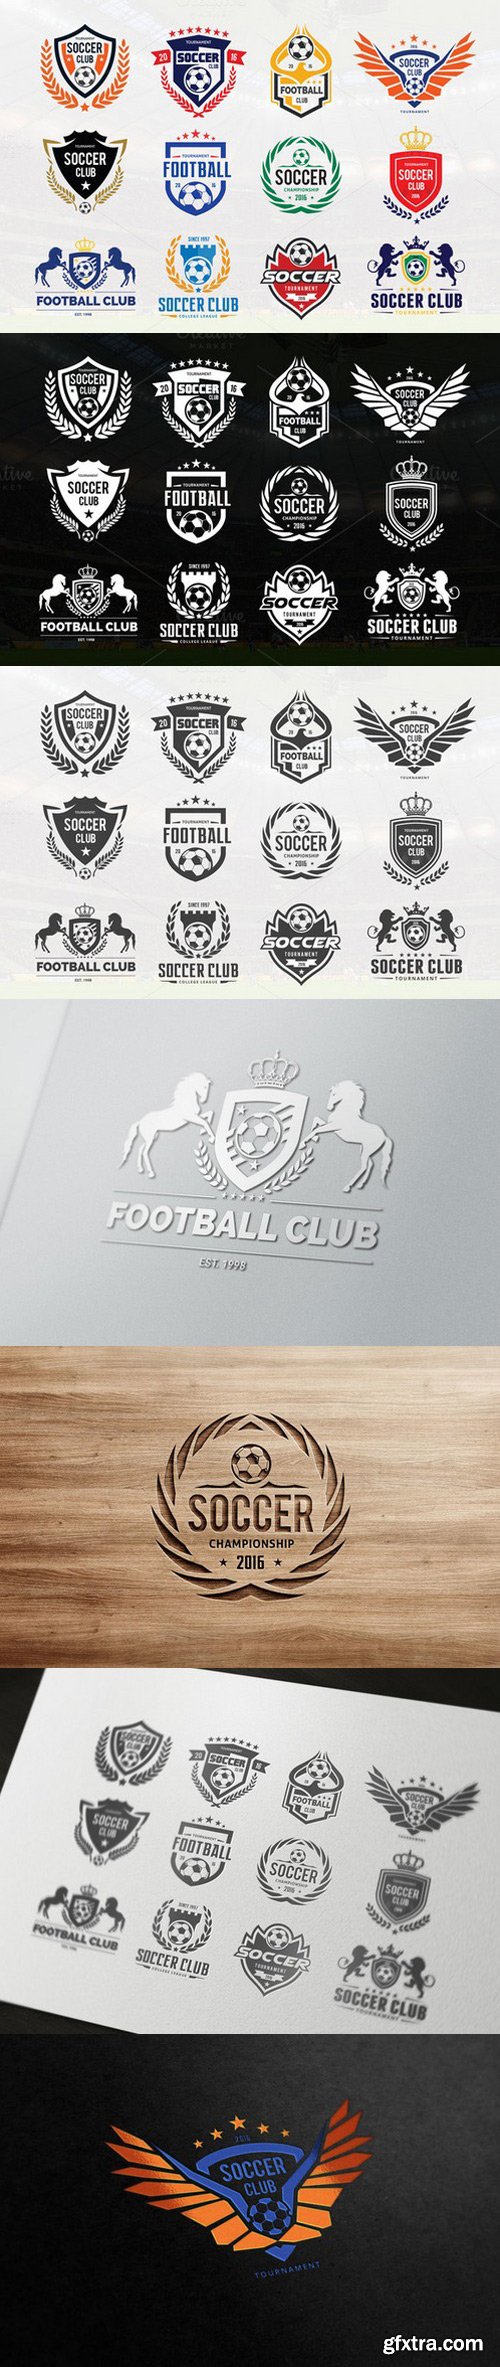 CM - Soccer Logo Football logo collection 620837